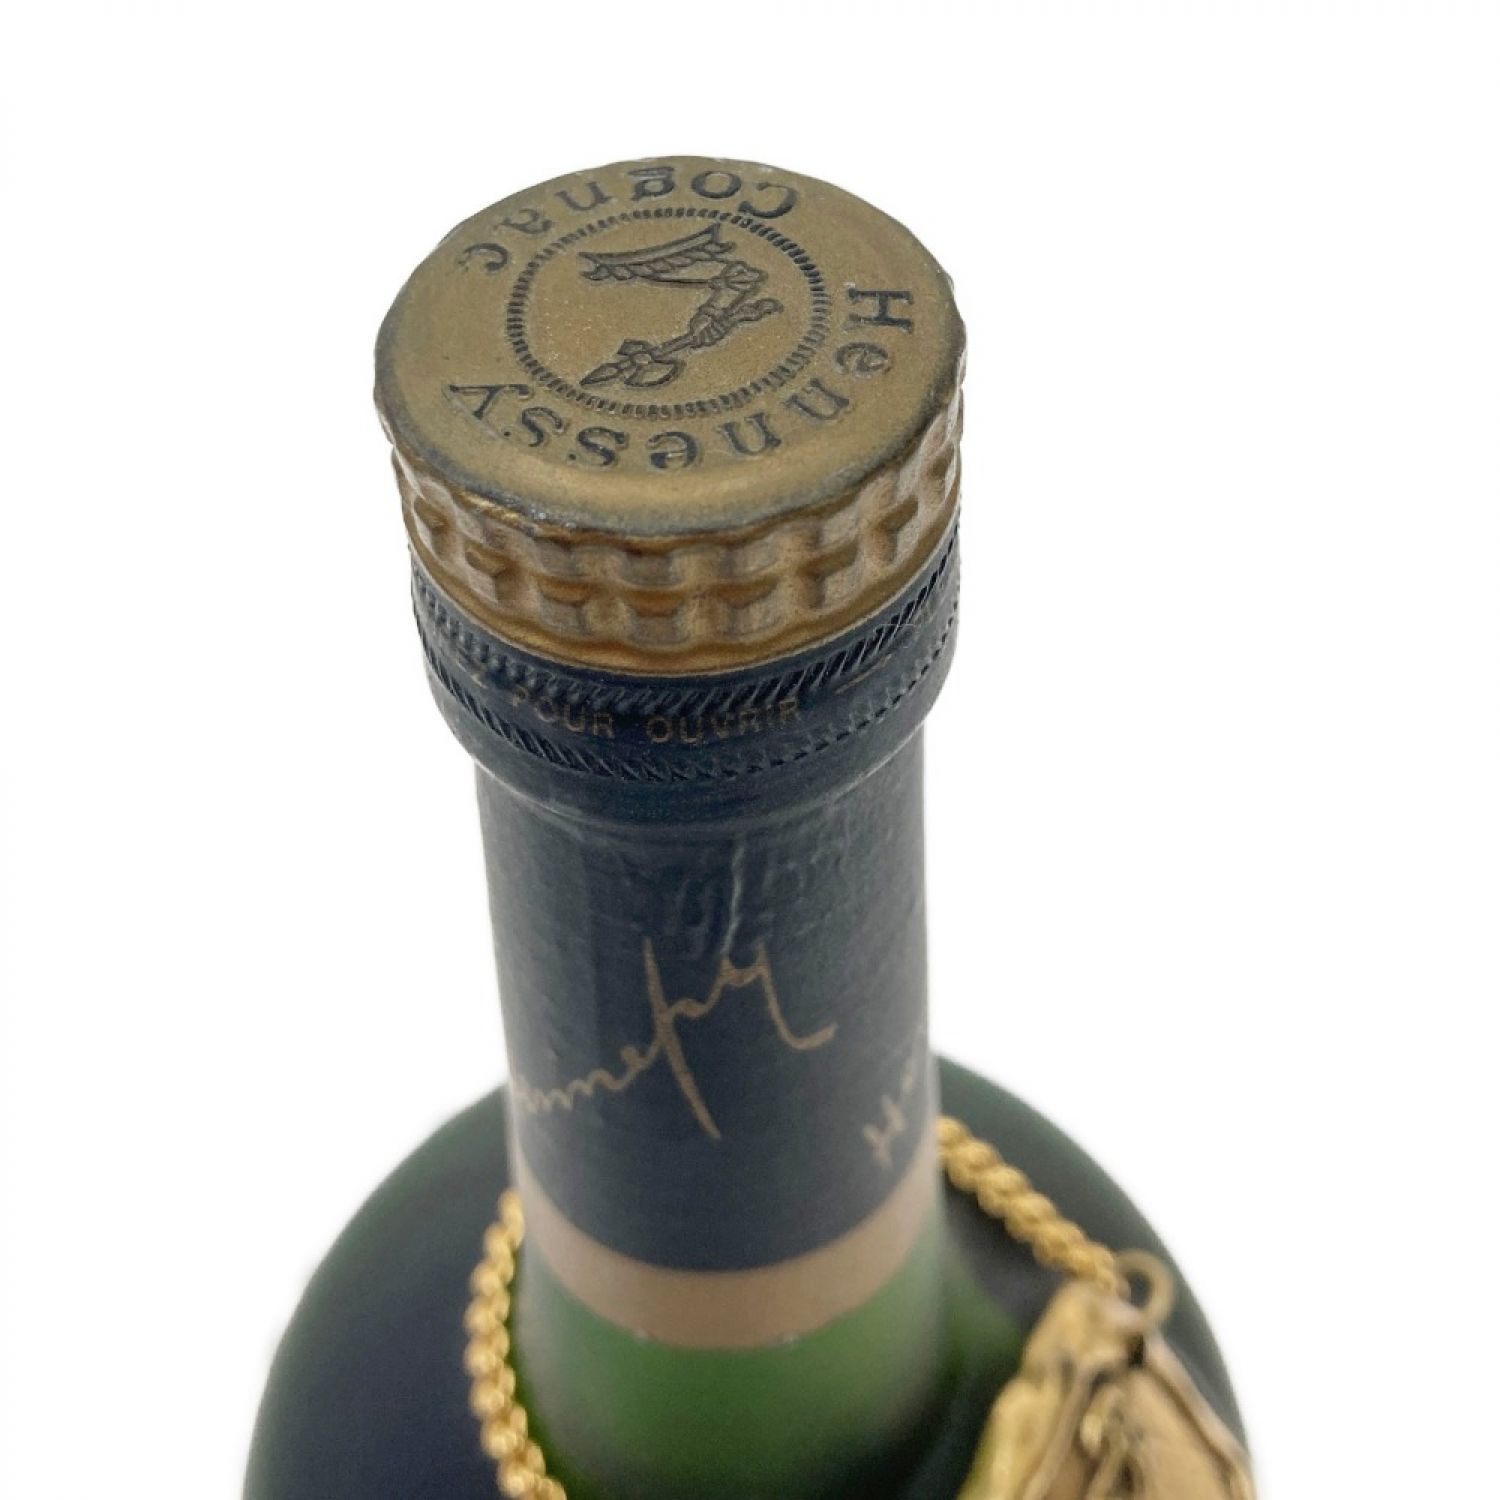 中古】 Hennessy ヘネシー NAPOLEON ナポレオン 700ml 古酒 Nランク